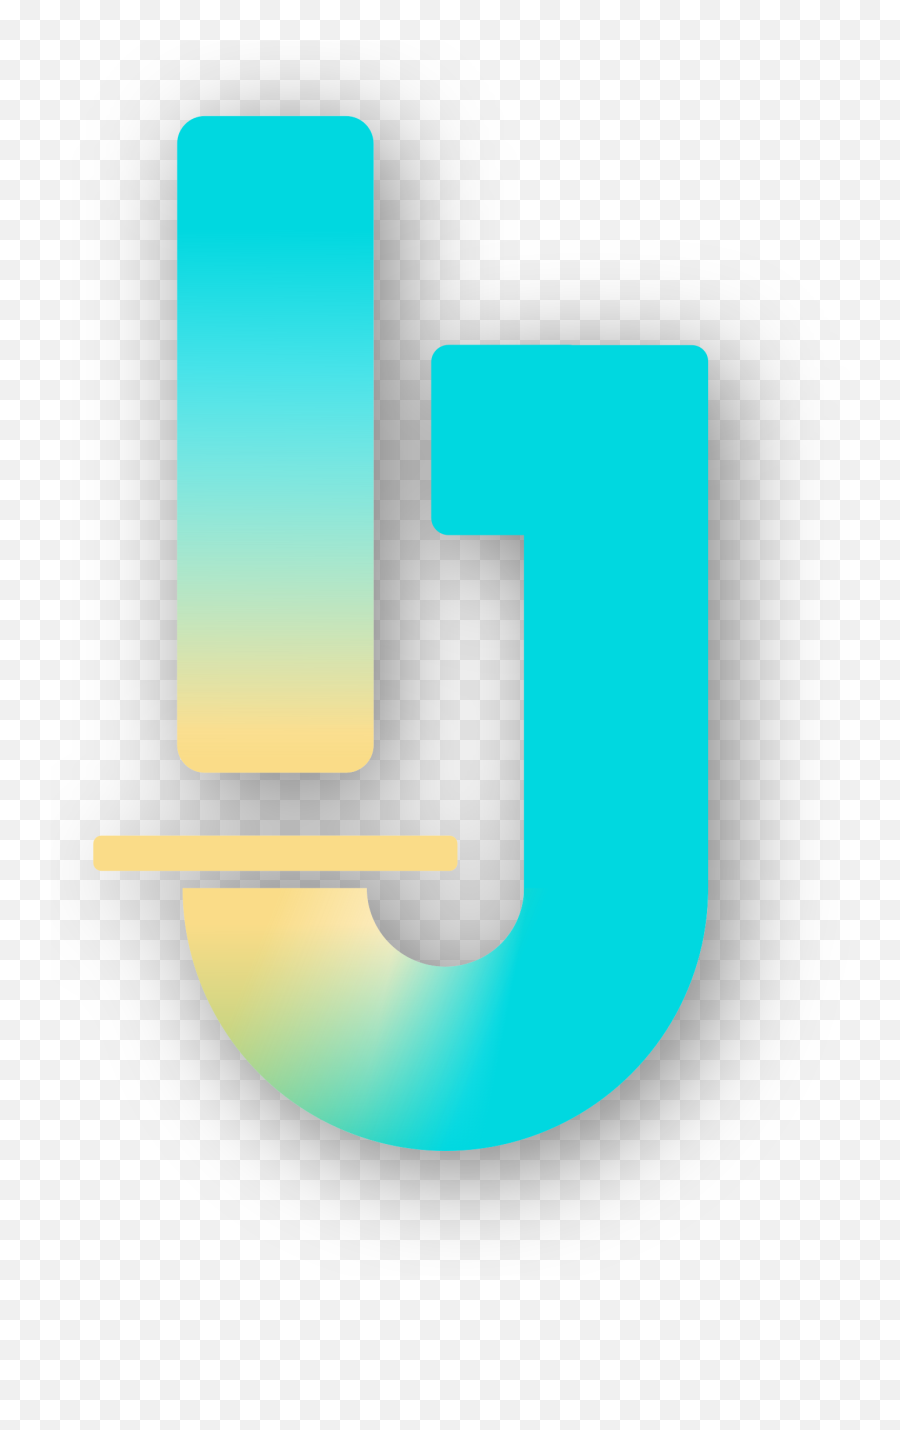 Imagej Wiki Emoji,Shadow Projects Logo